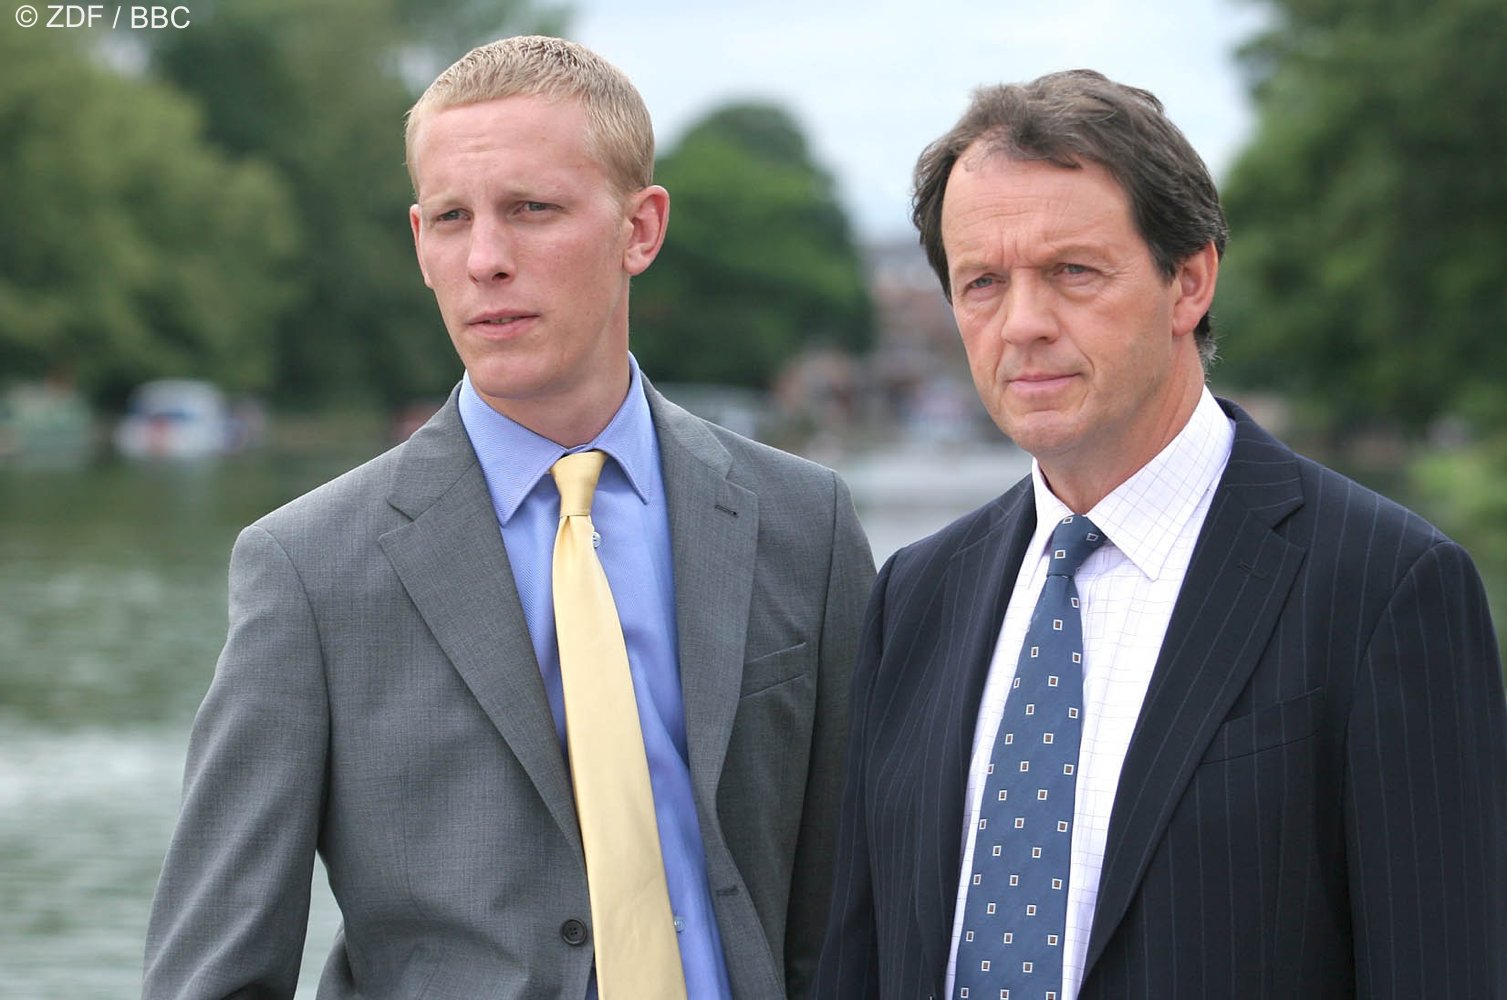 Ermittlerduo: Robert Lewis (Kevin Whately; rechts im Bild) und James Hathaway (Laurence Fox). © ZDF / BBC